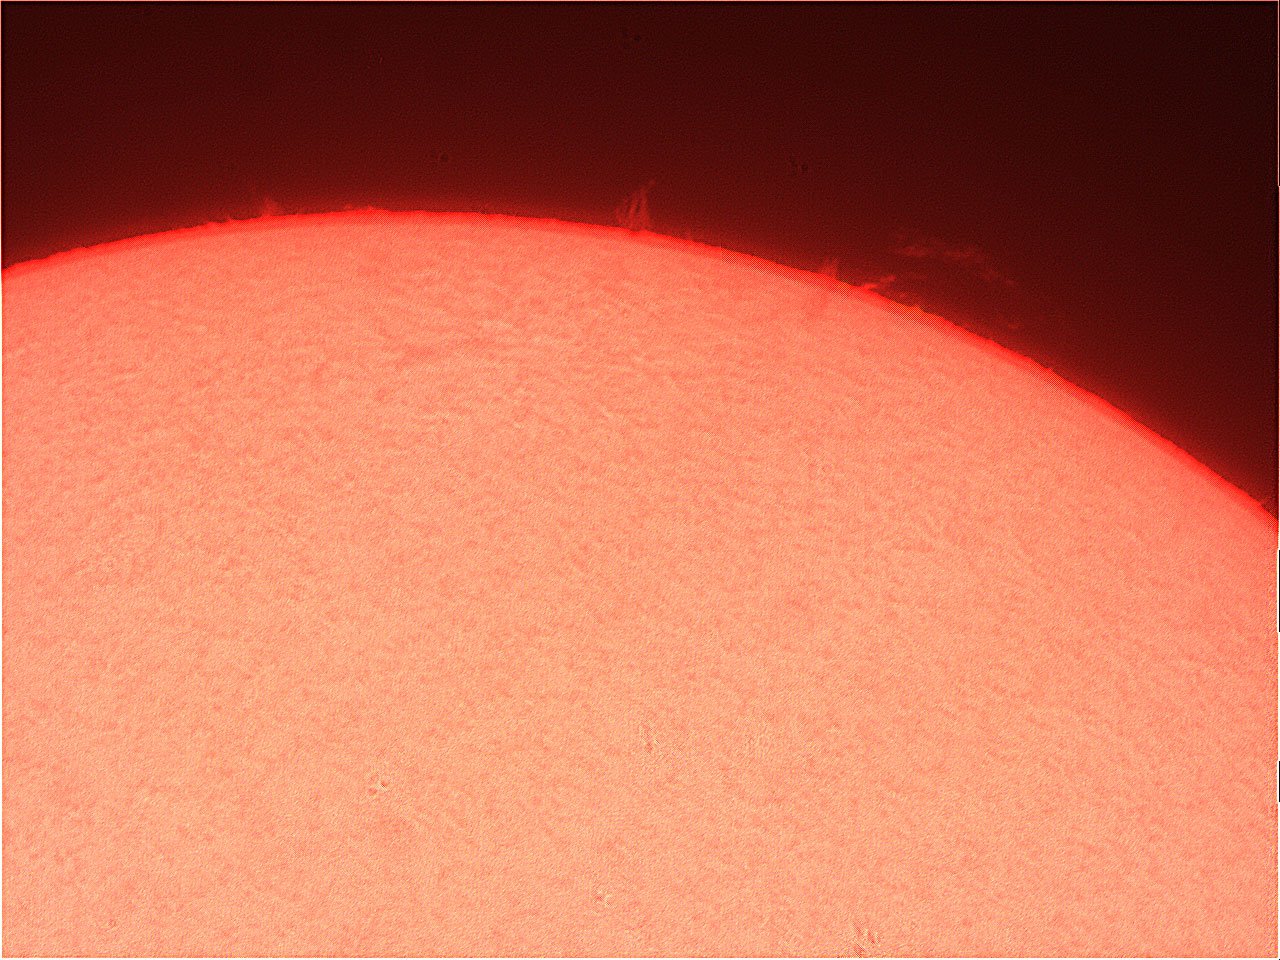 Prominence-151221-vid325.jpg